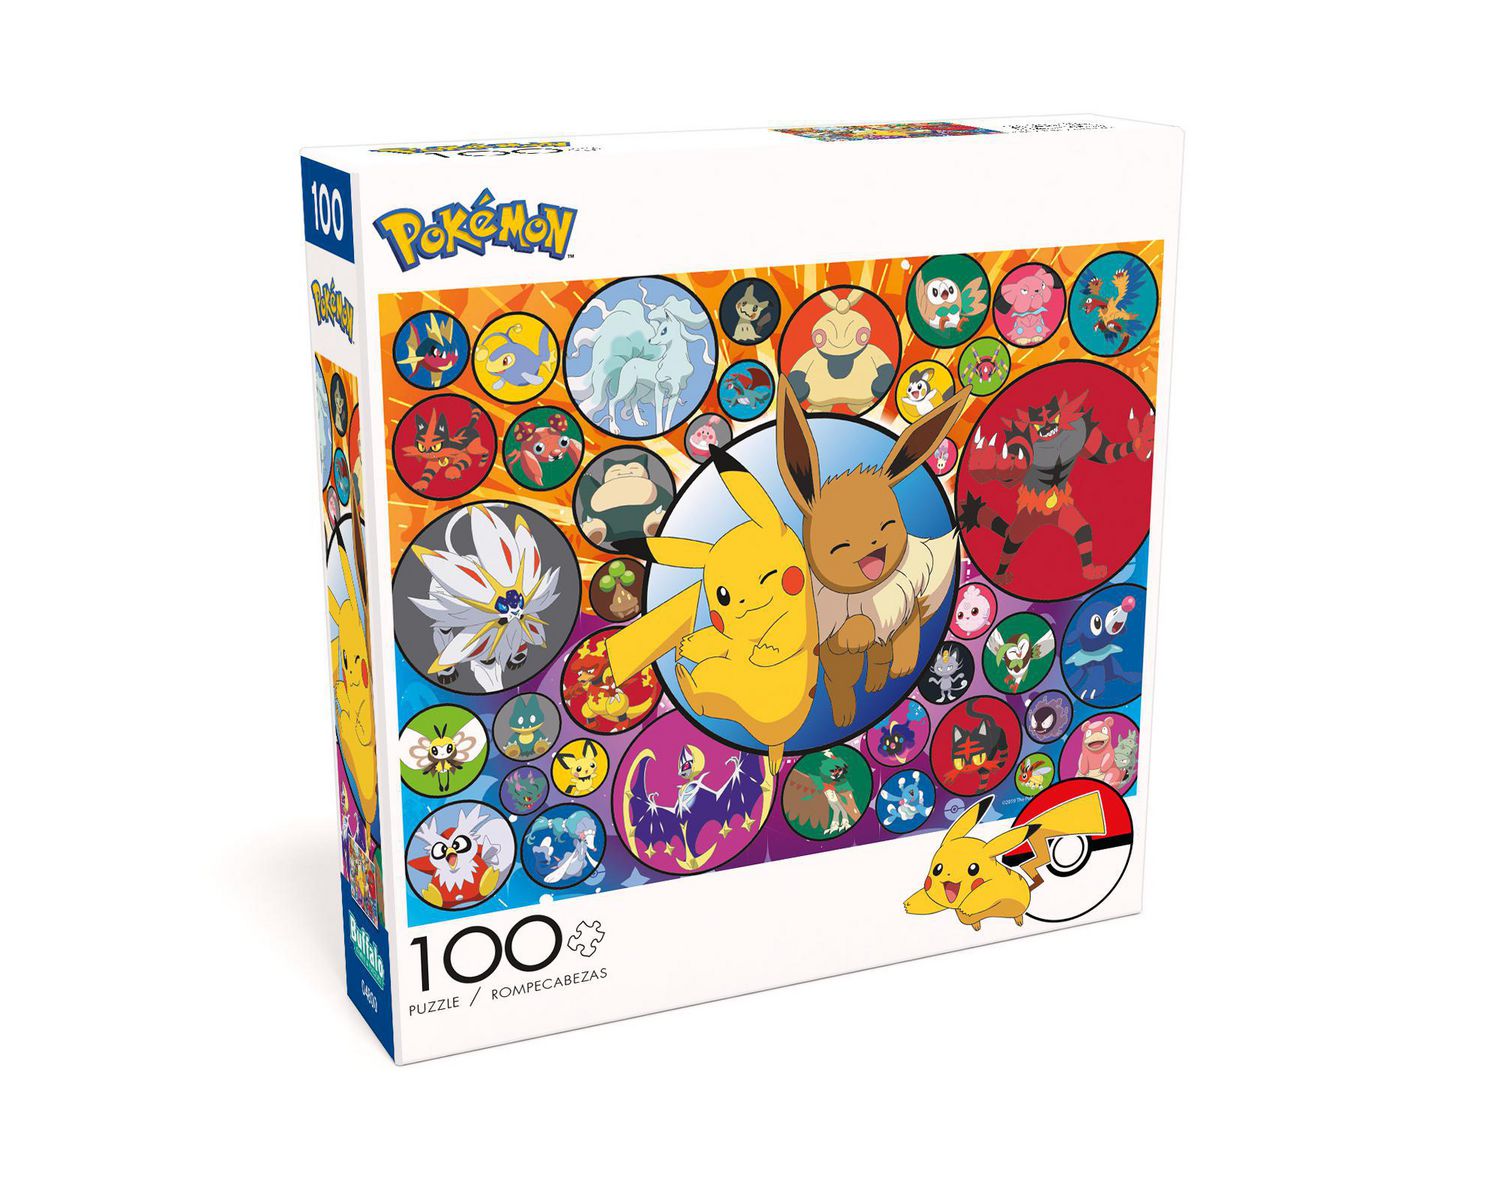 Pokemon Alola Jigsaw Puzzle - 100 Piece